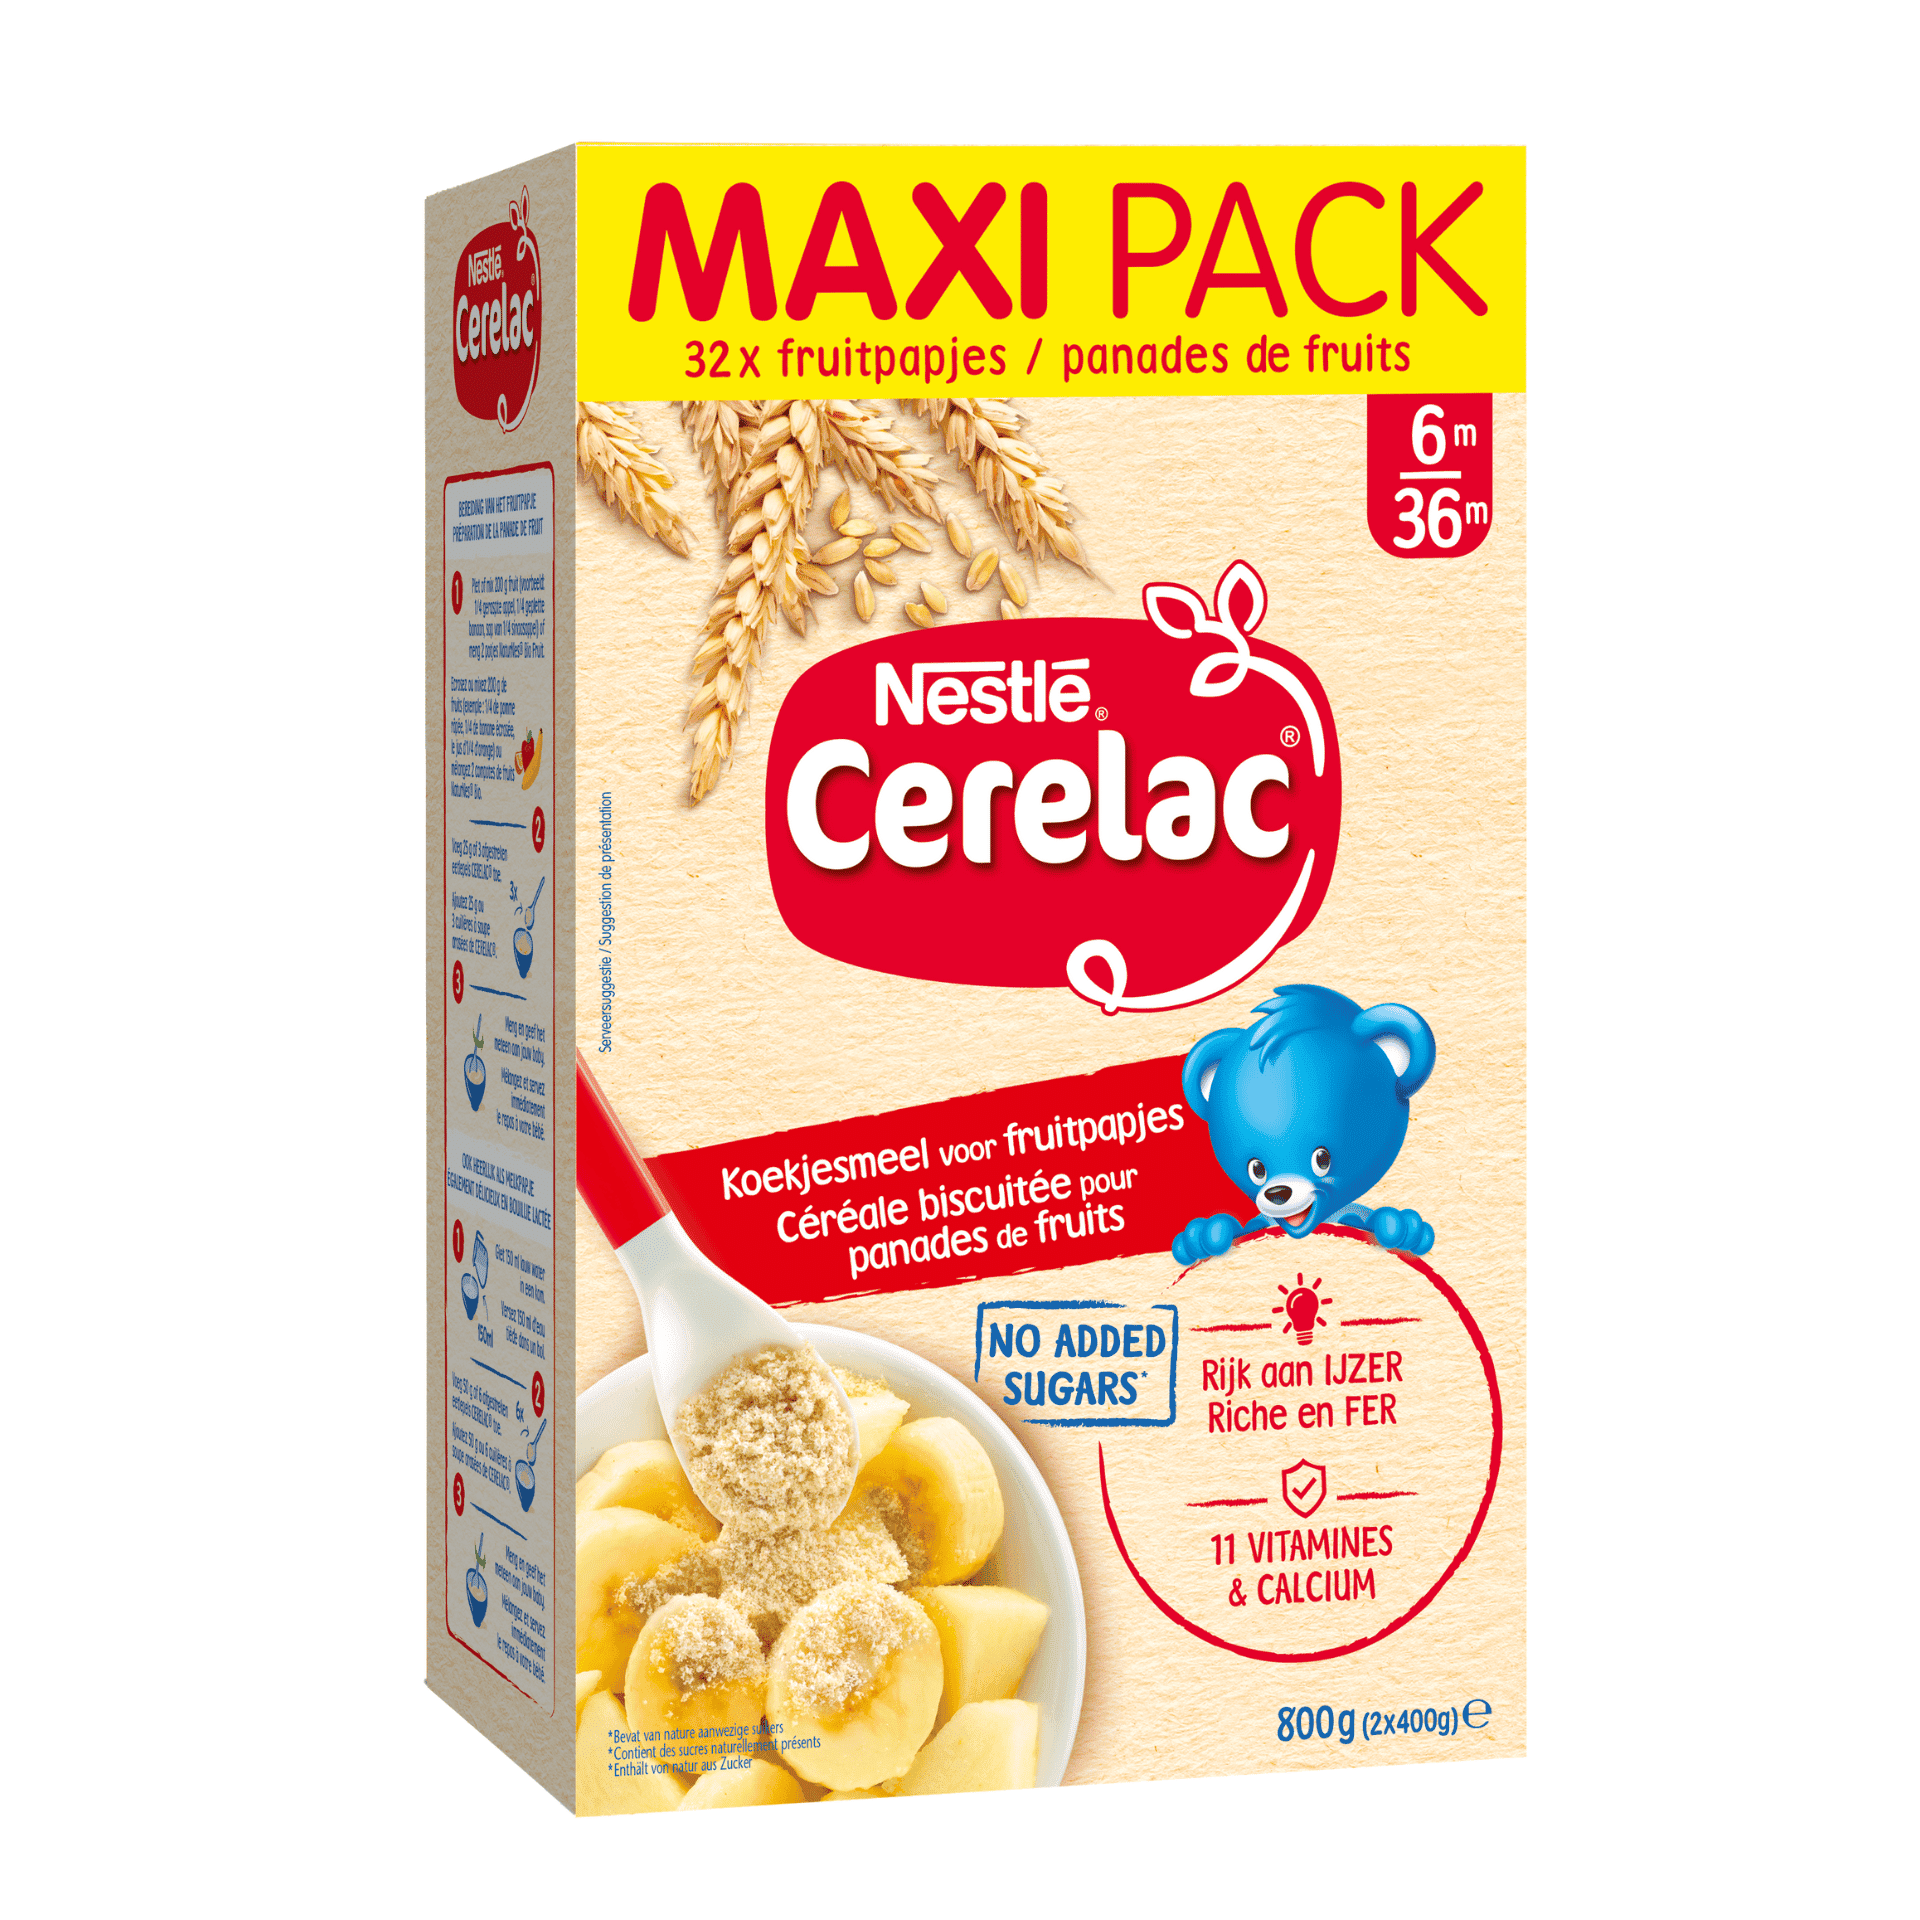 Nestlé Cerelac Koekjesmeel voor Fruitpapjes